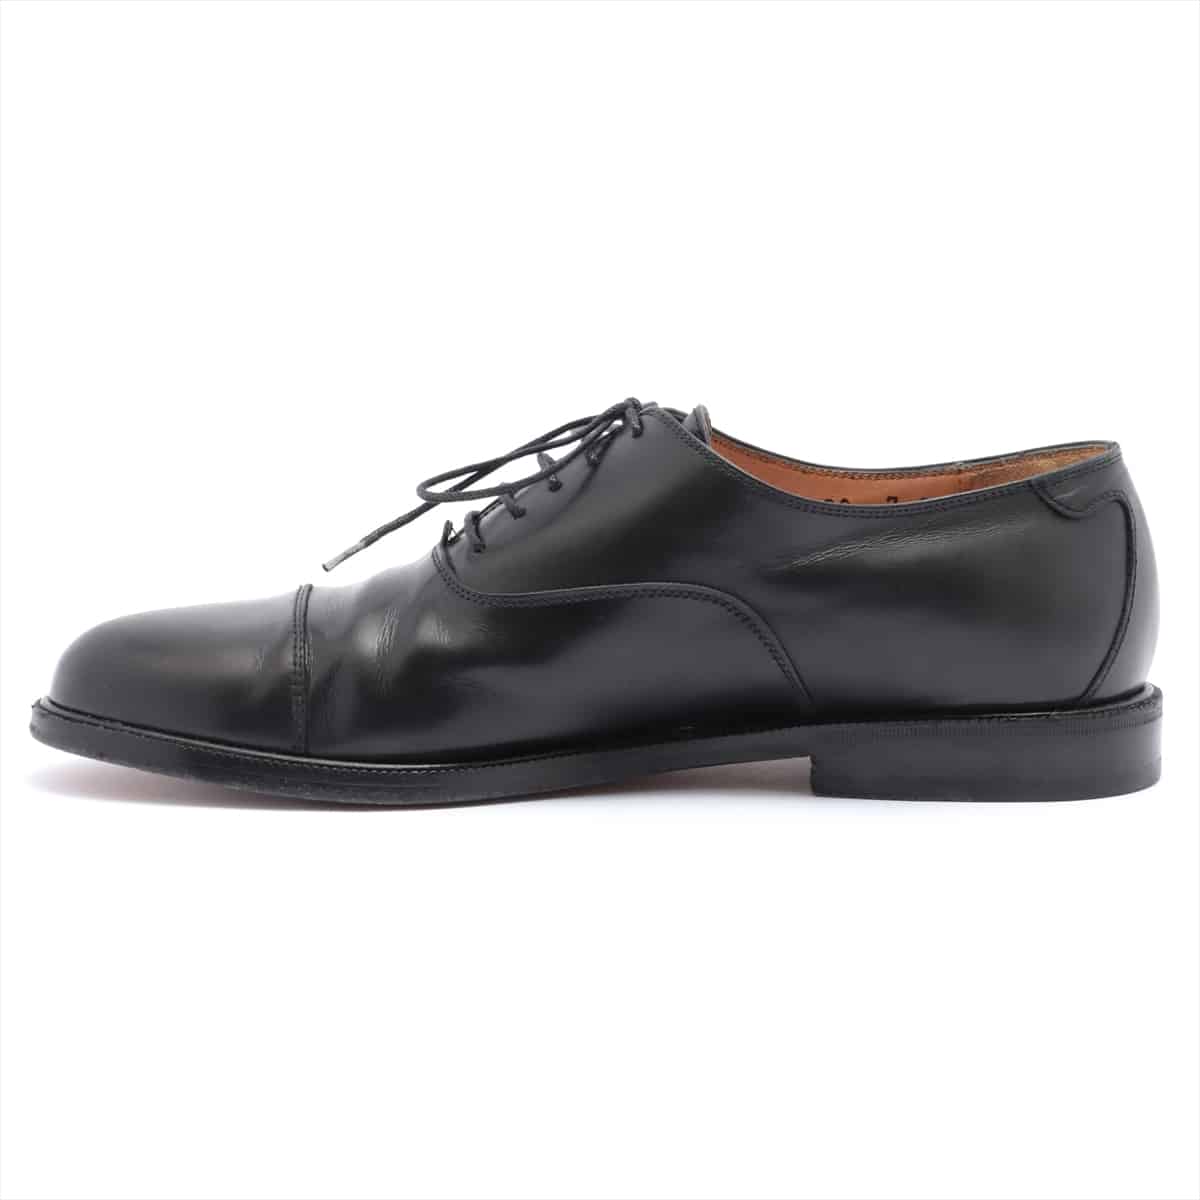 Ferragamo Leather Leather shoes 7 Men's Black